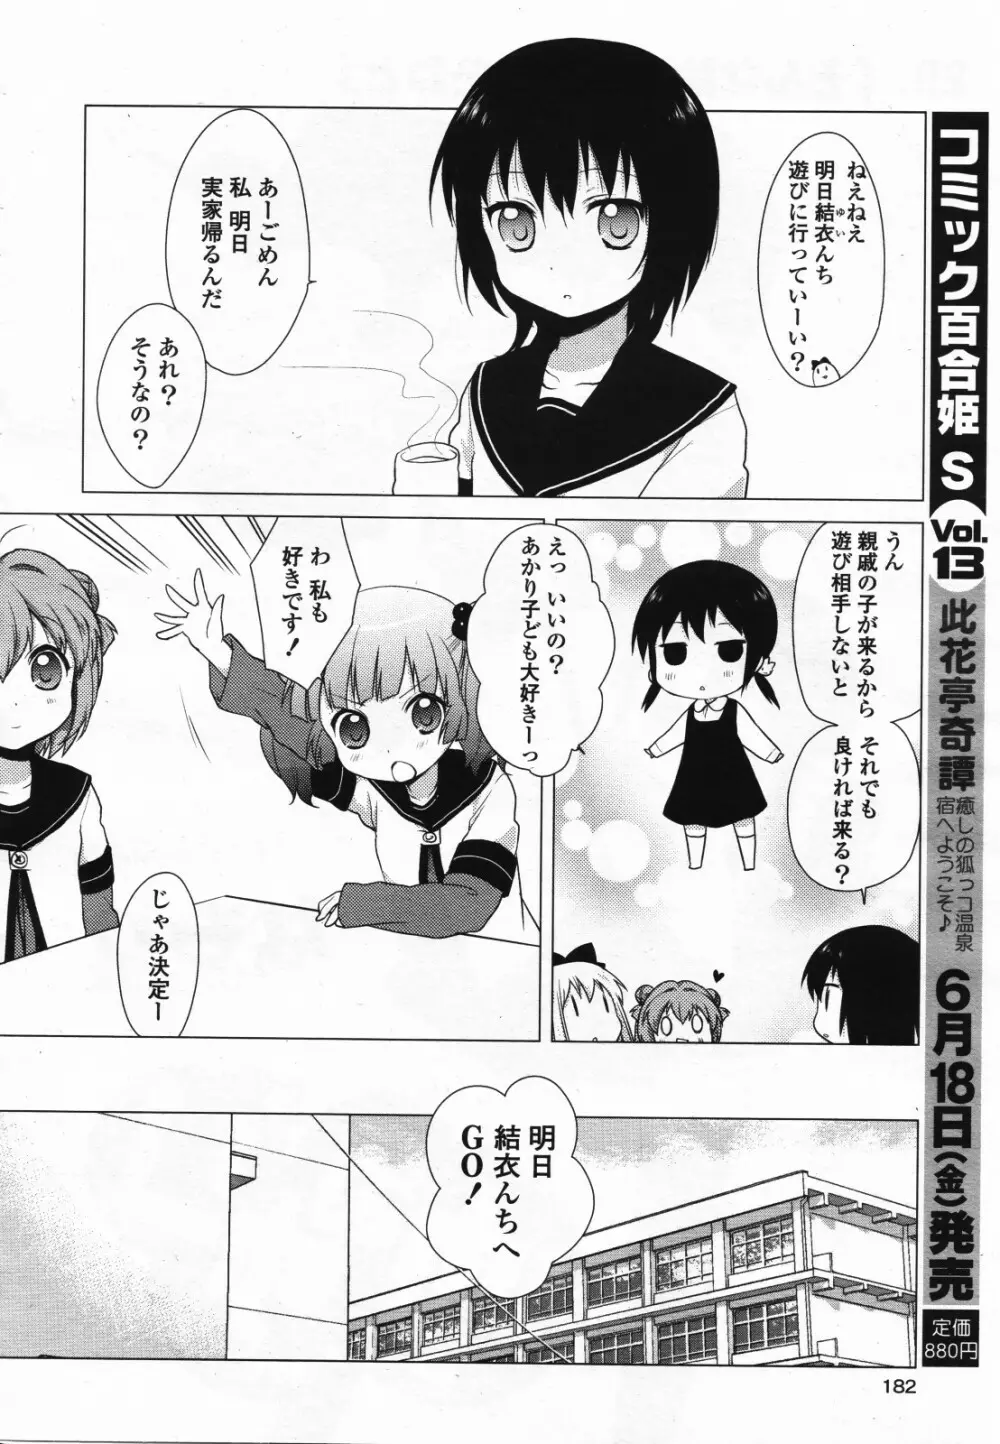 コミック百合姫S vol.12 183ページ